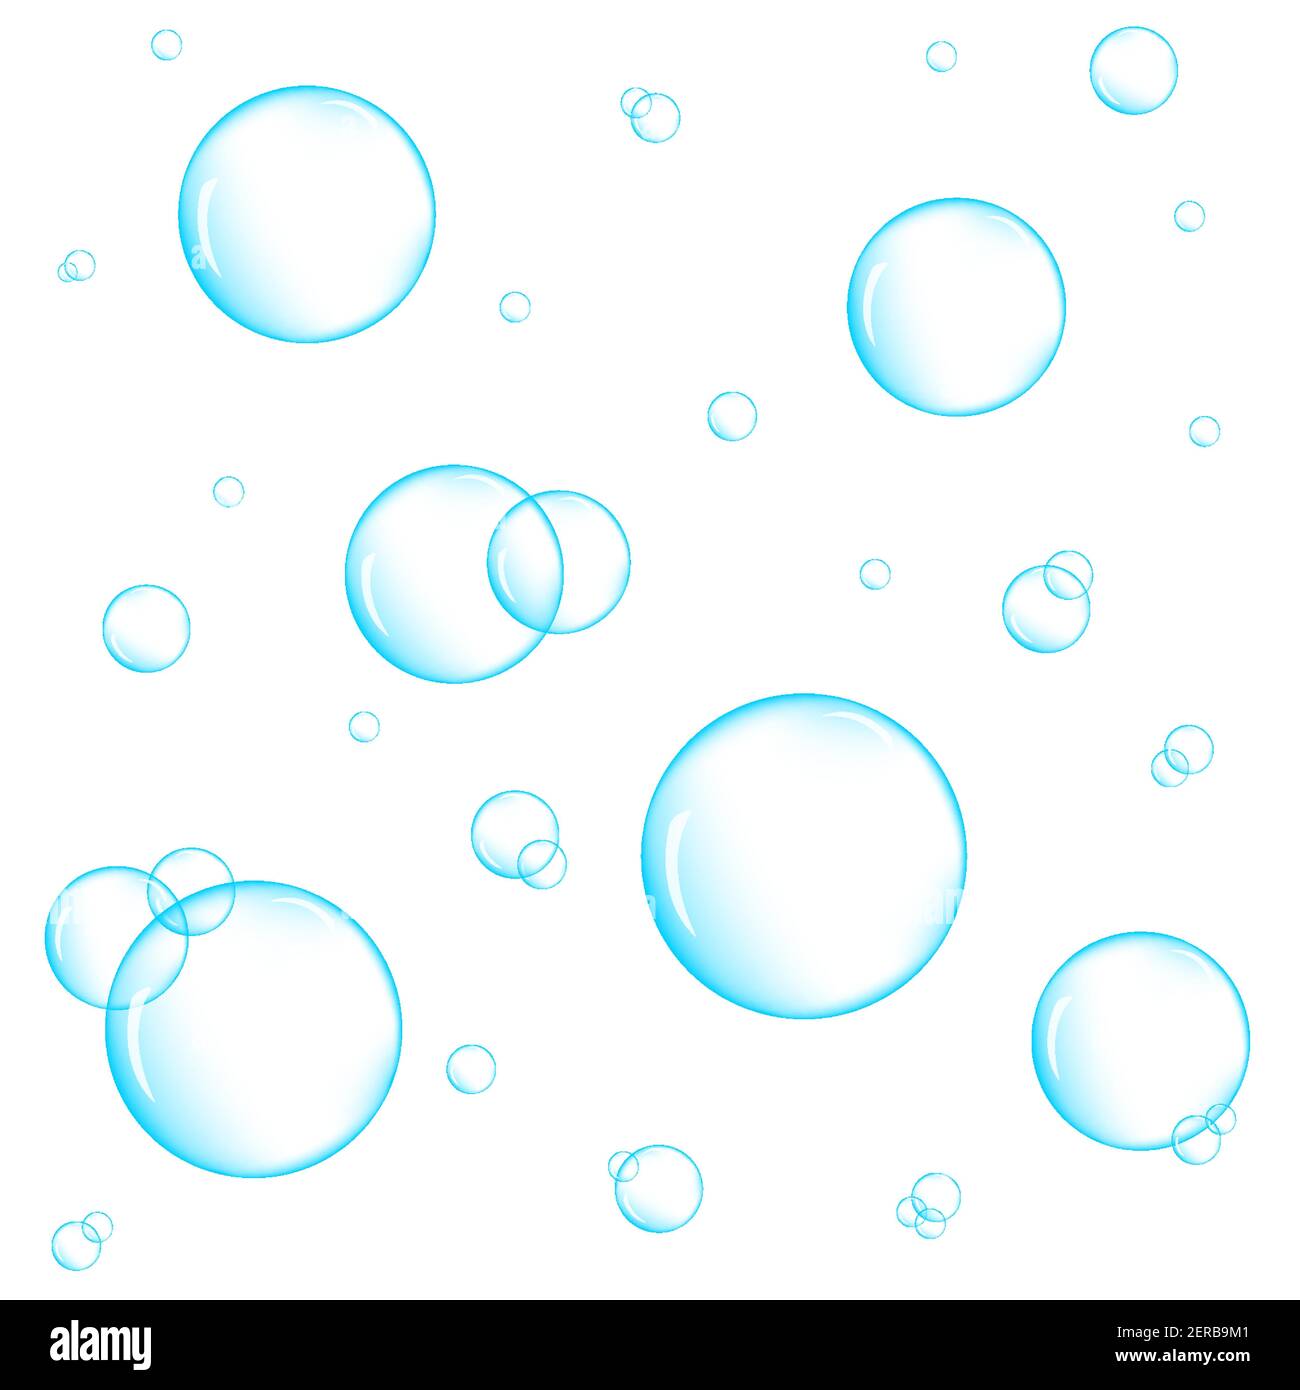 Realistische blaue Unterwasserblasen auf weißem Hintergrund. Aquarium Wasserstrahl, Seife oder Reinigungsschaum. Vektorgrafik. Stock Vektor